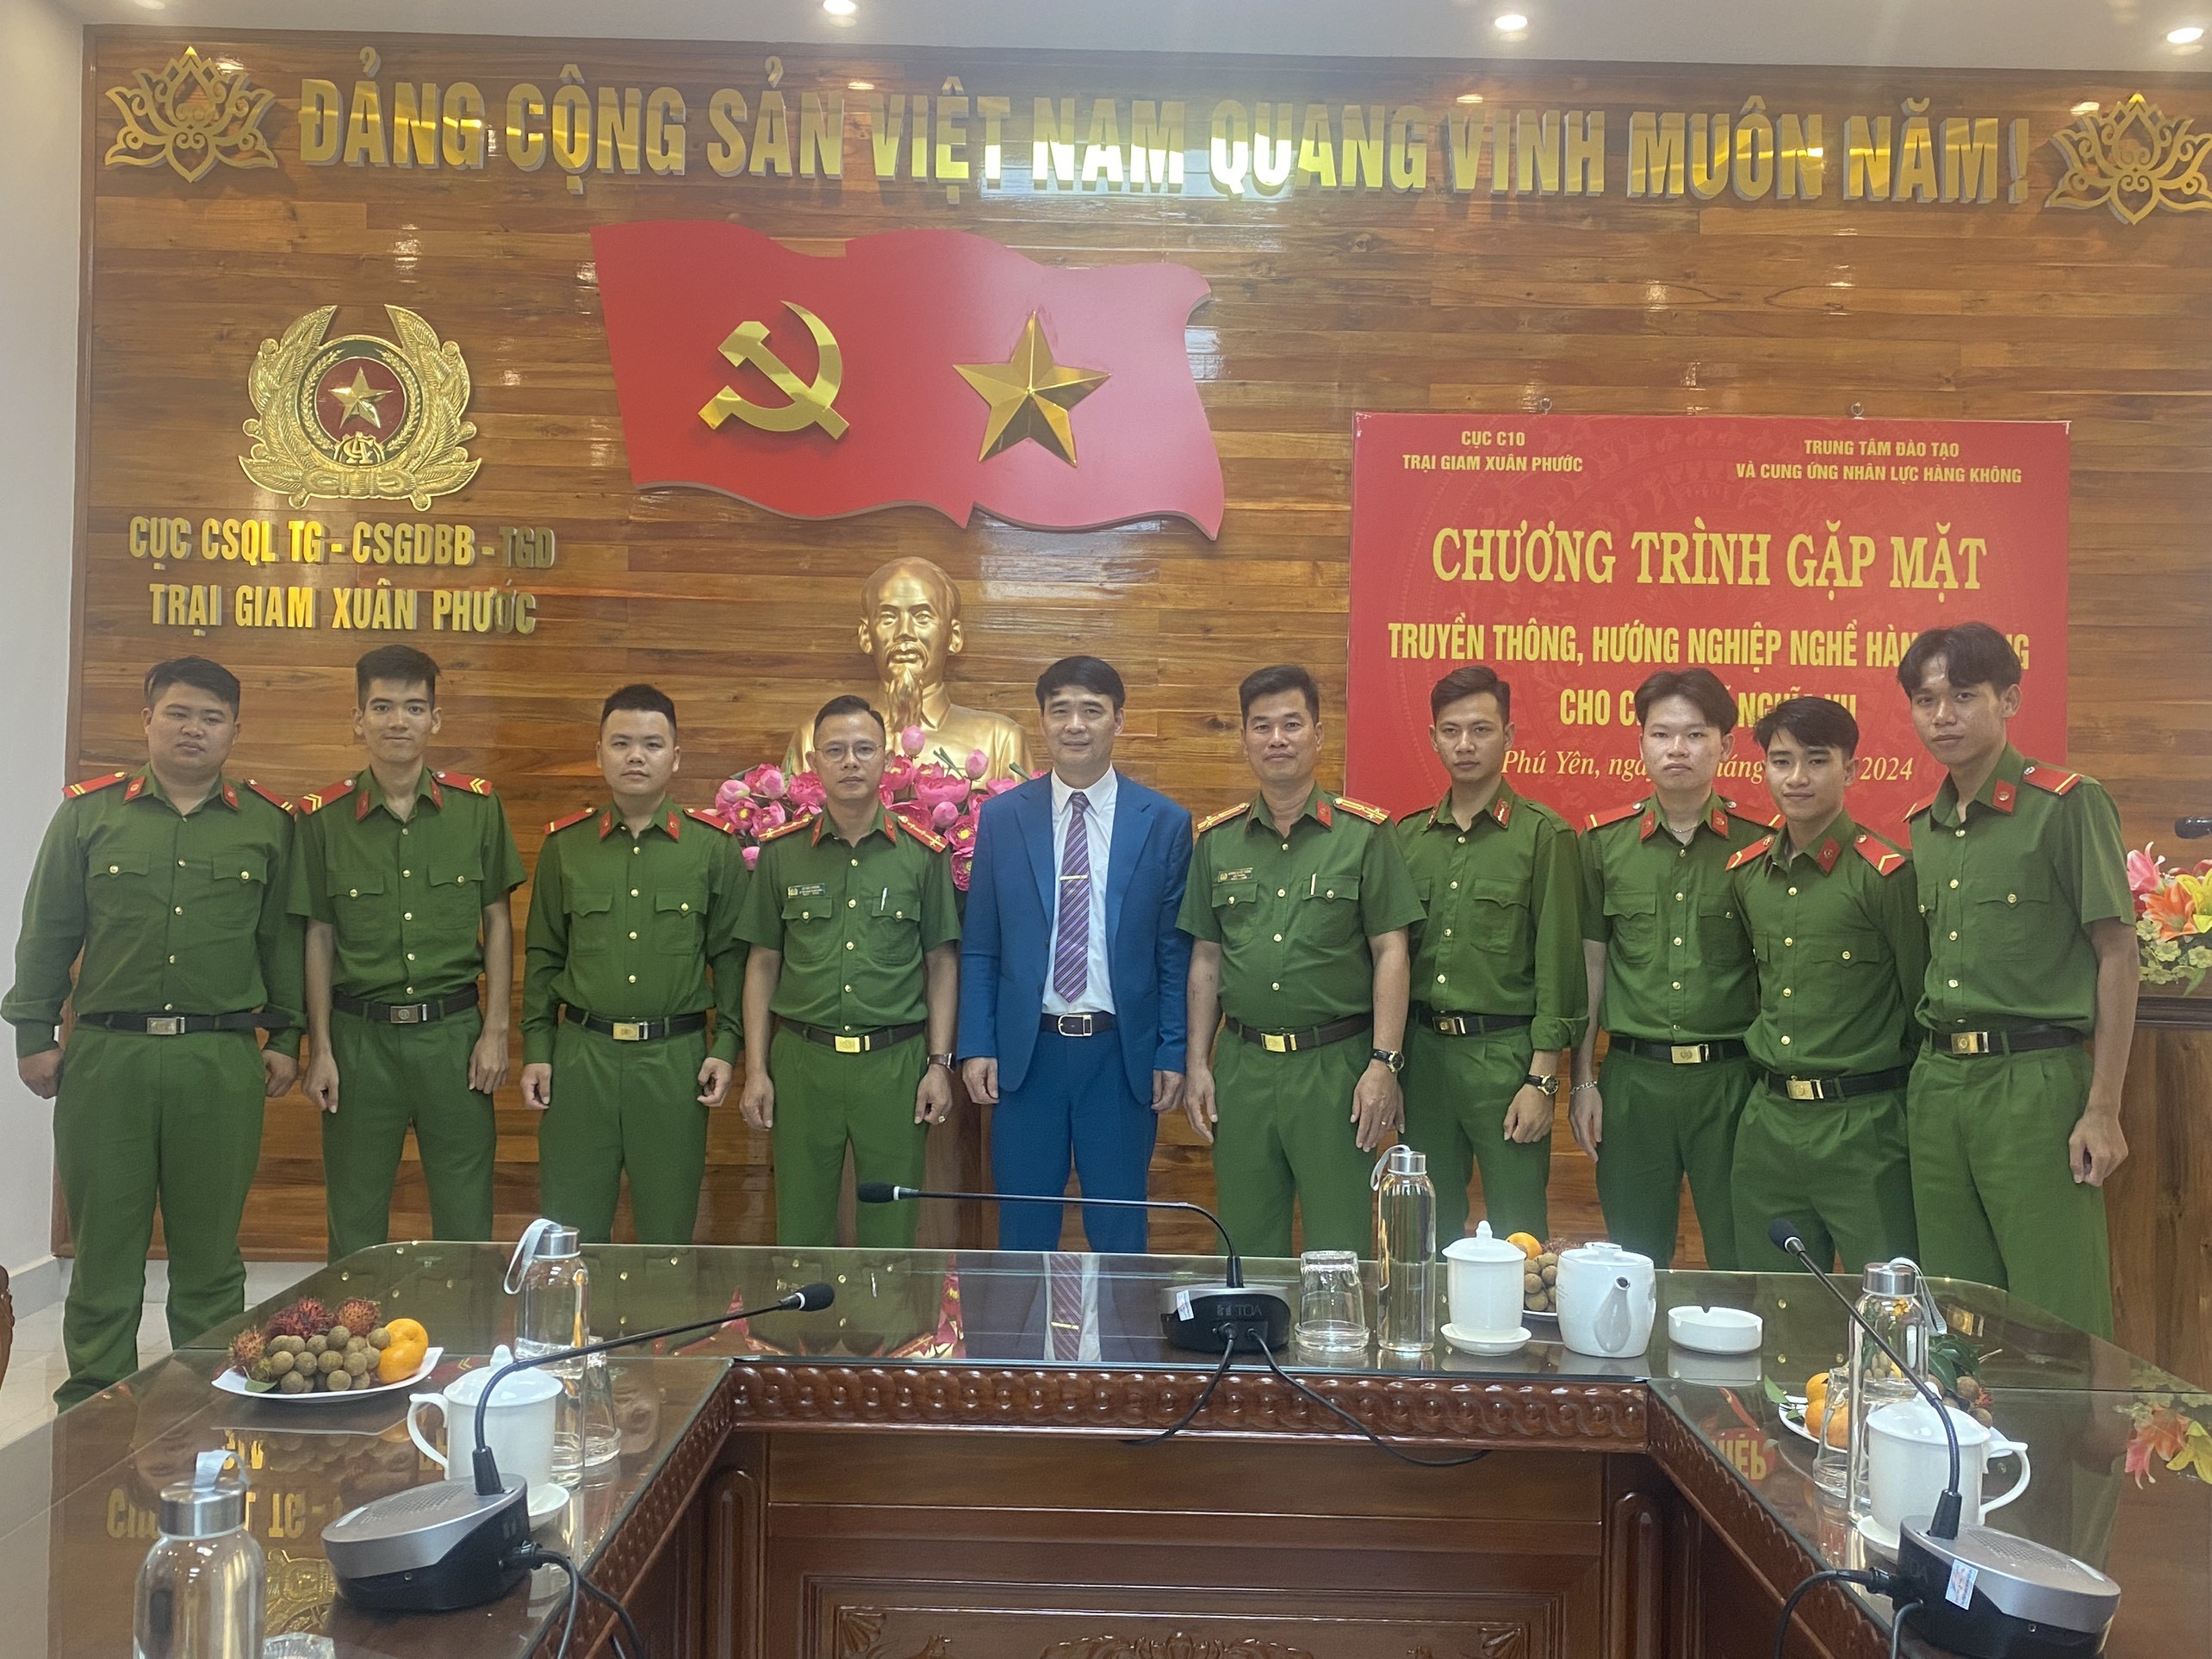 TTTCUNL-Tư vấn nghề nghiệp và giới thiệu việc làm cho chiến sỹ nghĩa vụ Trại giam Xuân Phước, Phú Yên